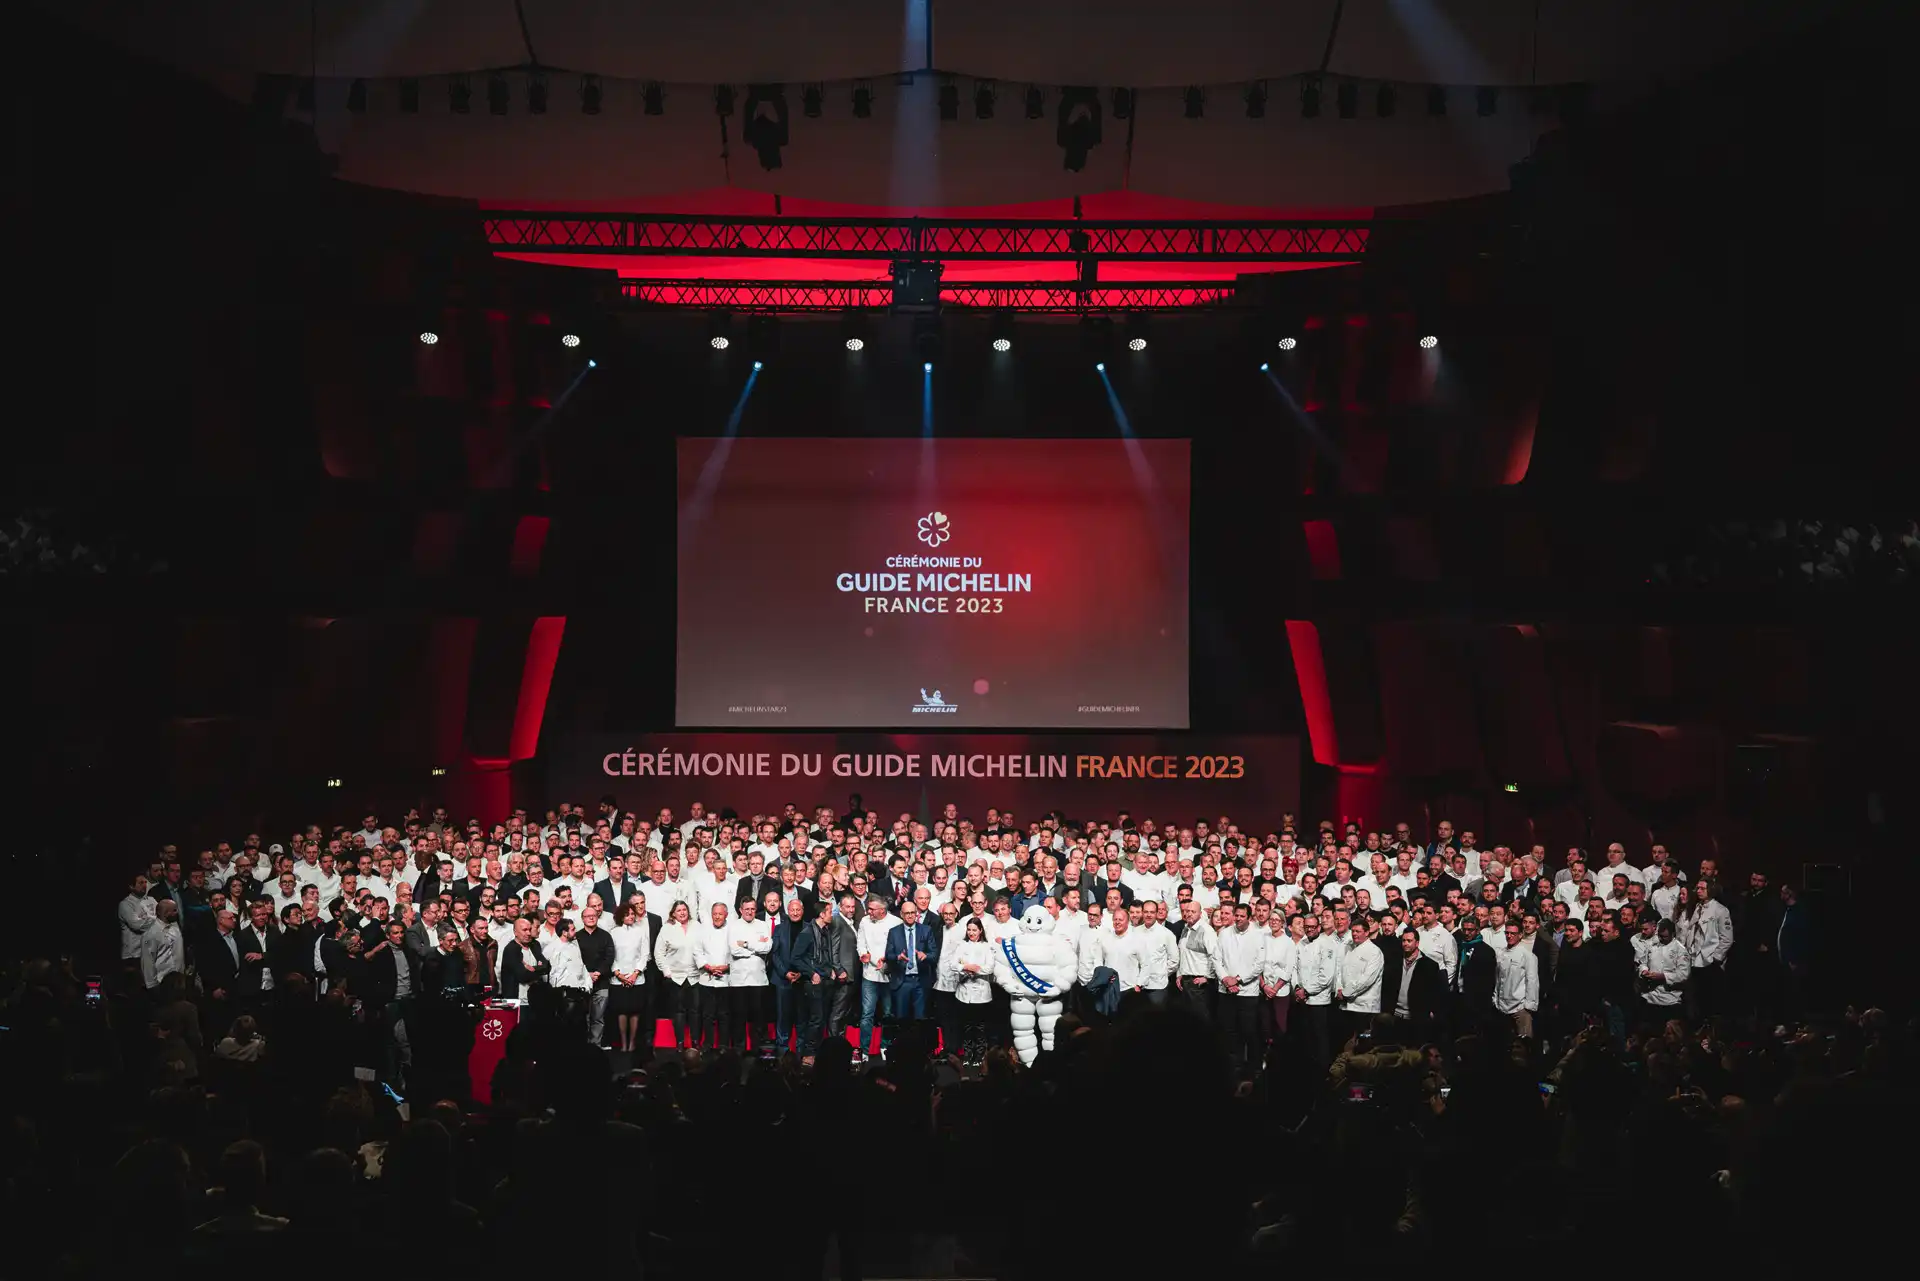 Rassemblement sur scène des participants à la cérémonie du Guide Michelin France 2023.